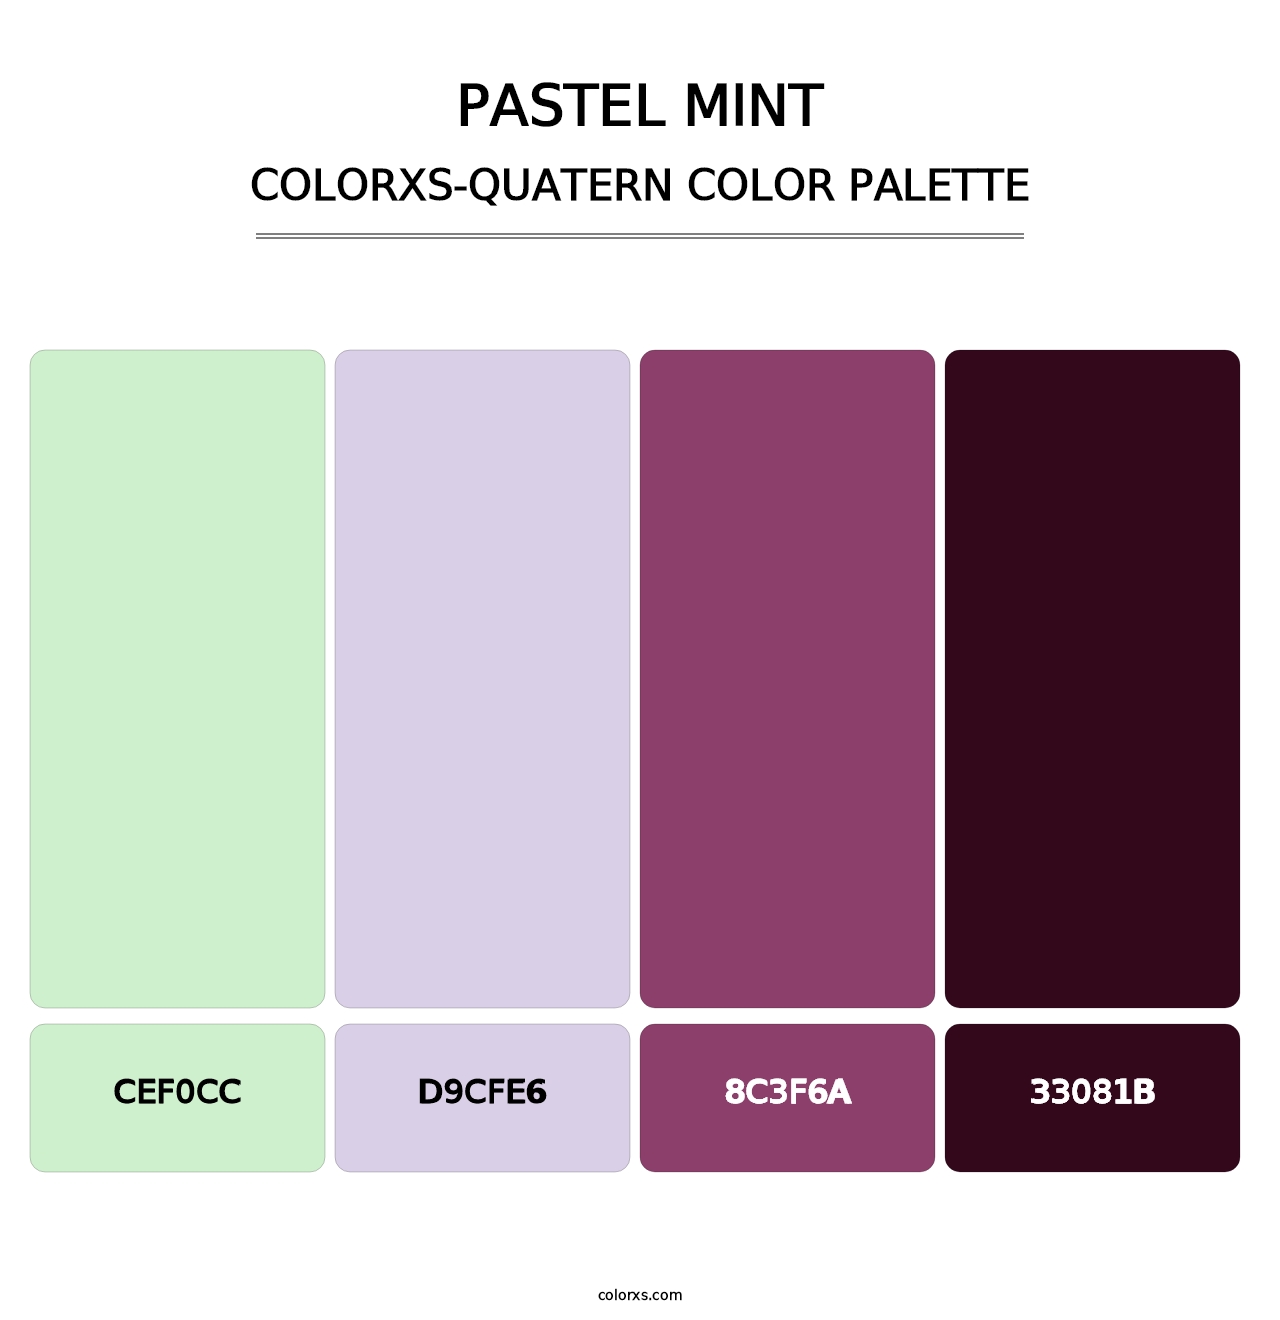 Pastel Mint - Colorxs Quatern Palette